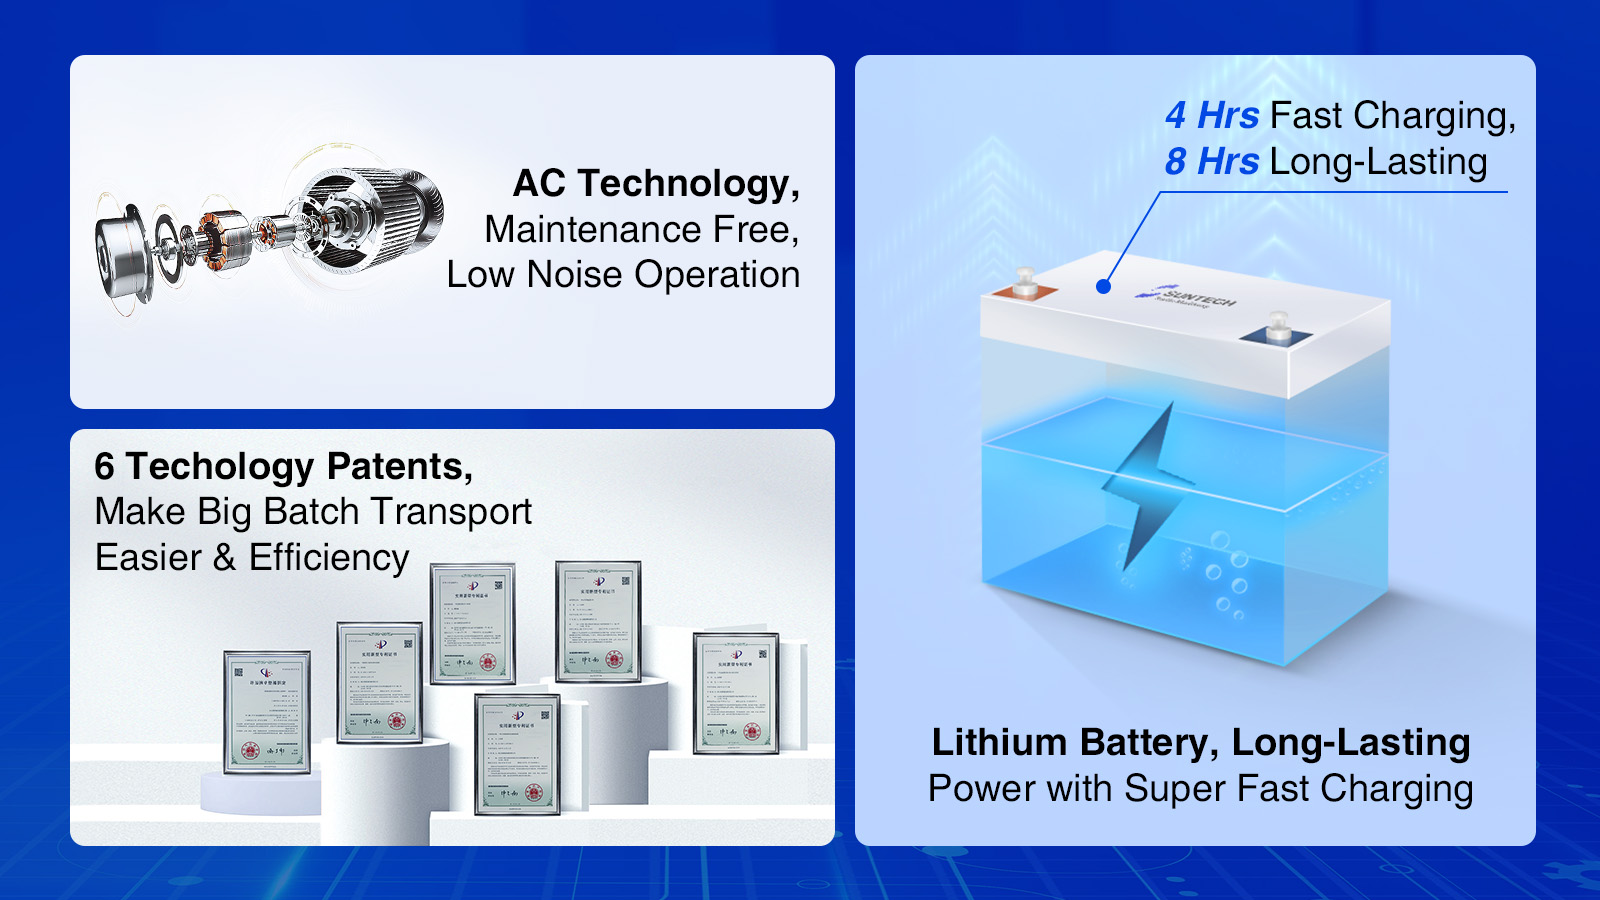 Технология переменного тока, 6 технологических патентов, литиевая батарея, долговечность